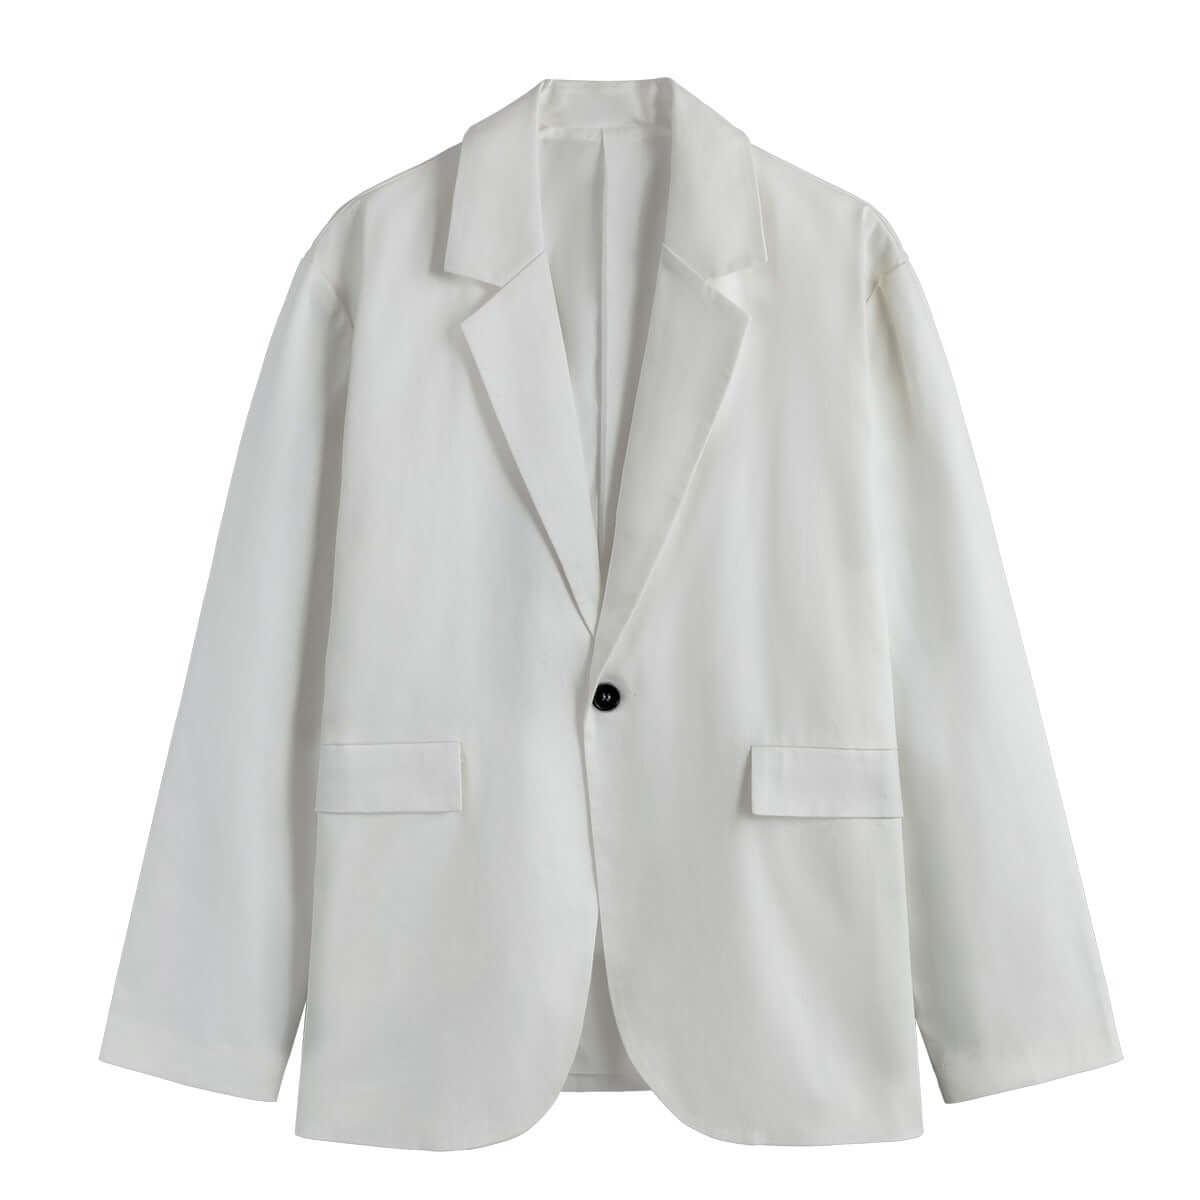 Men's Casual Blazer Jacket | Customized Blazer for Man - Archiify